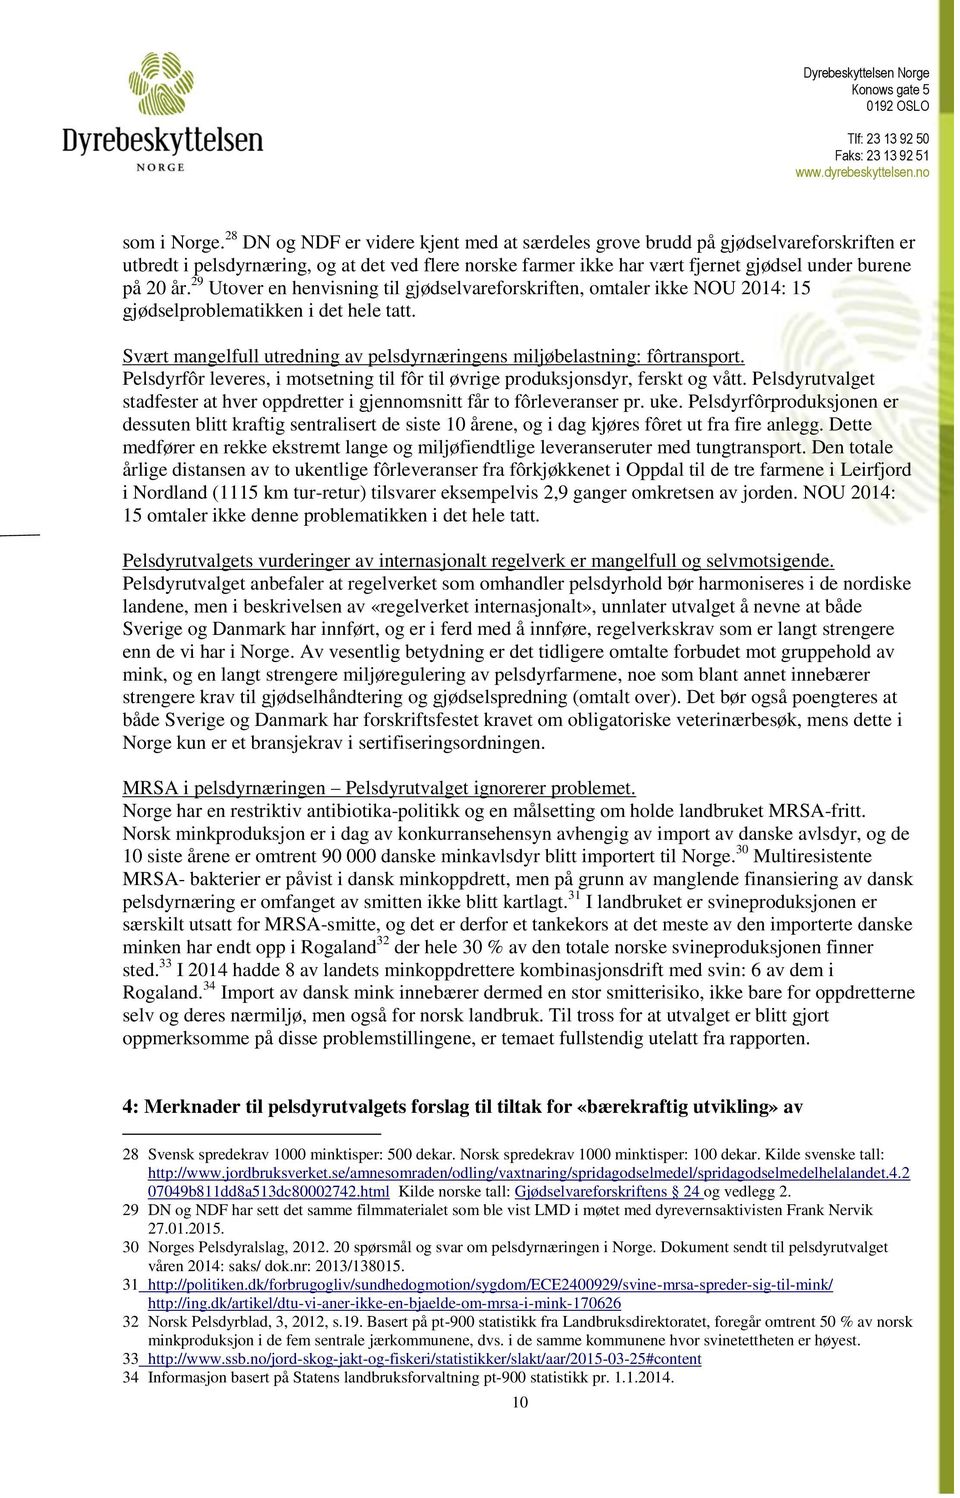 29 Utover en henvisning til gjødselvareforskriften, omtaler ikke NOU 2014: 15 gjødselproblematikken i det hele tatt. Svært mangelfull utredning av pelsdyrnæringens miljøbelastning: fôrtransport.